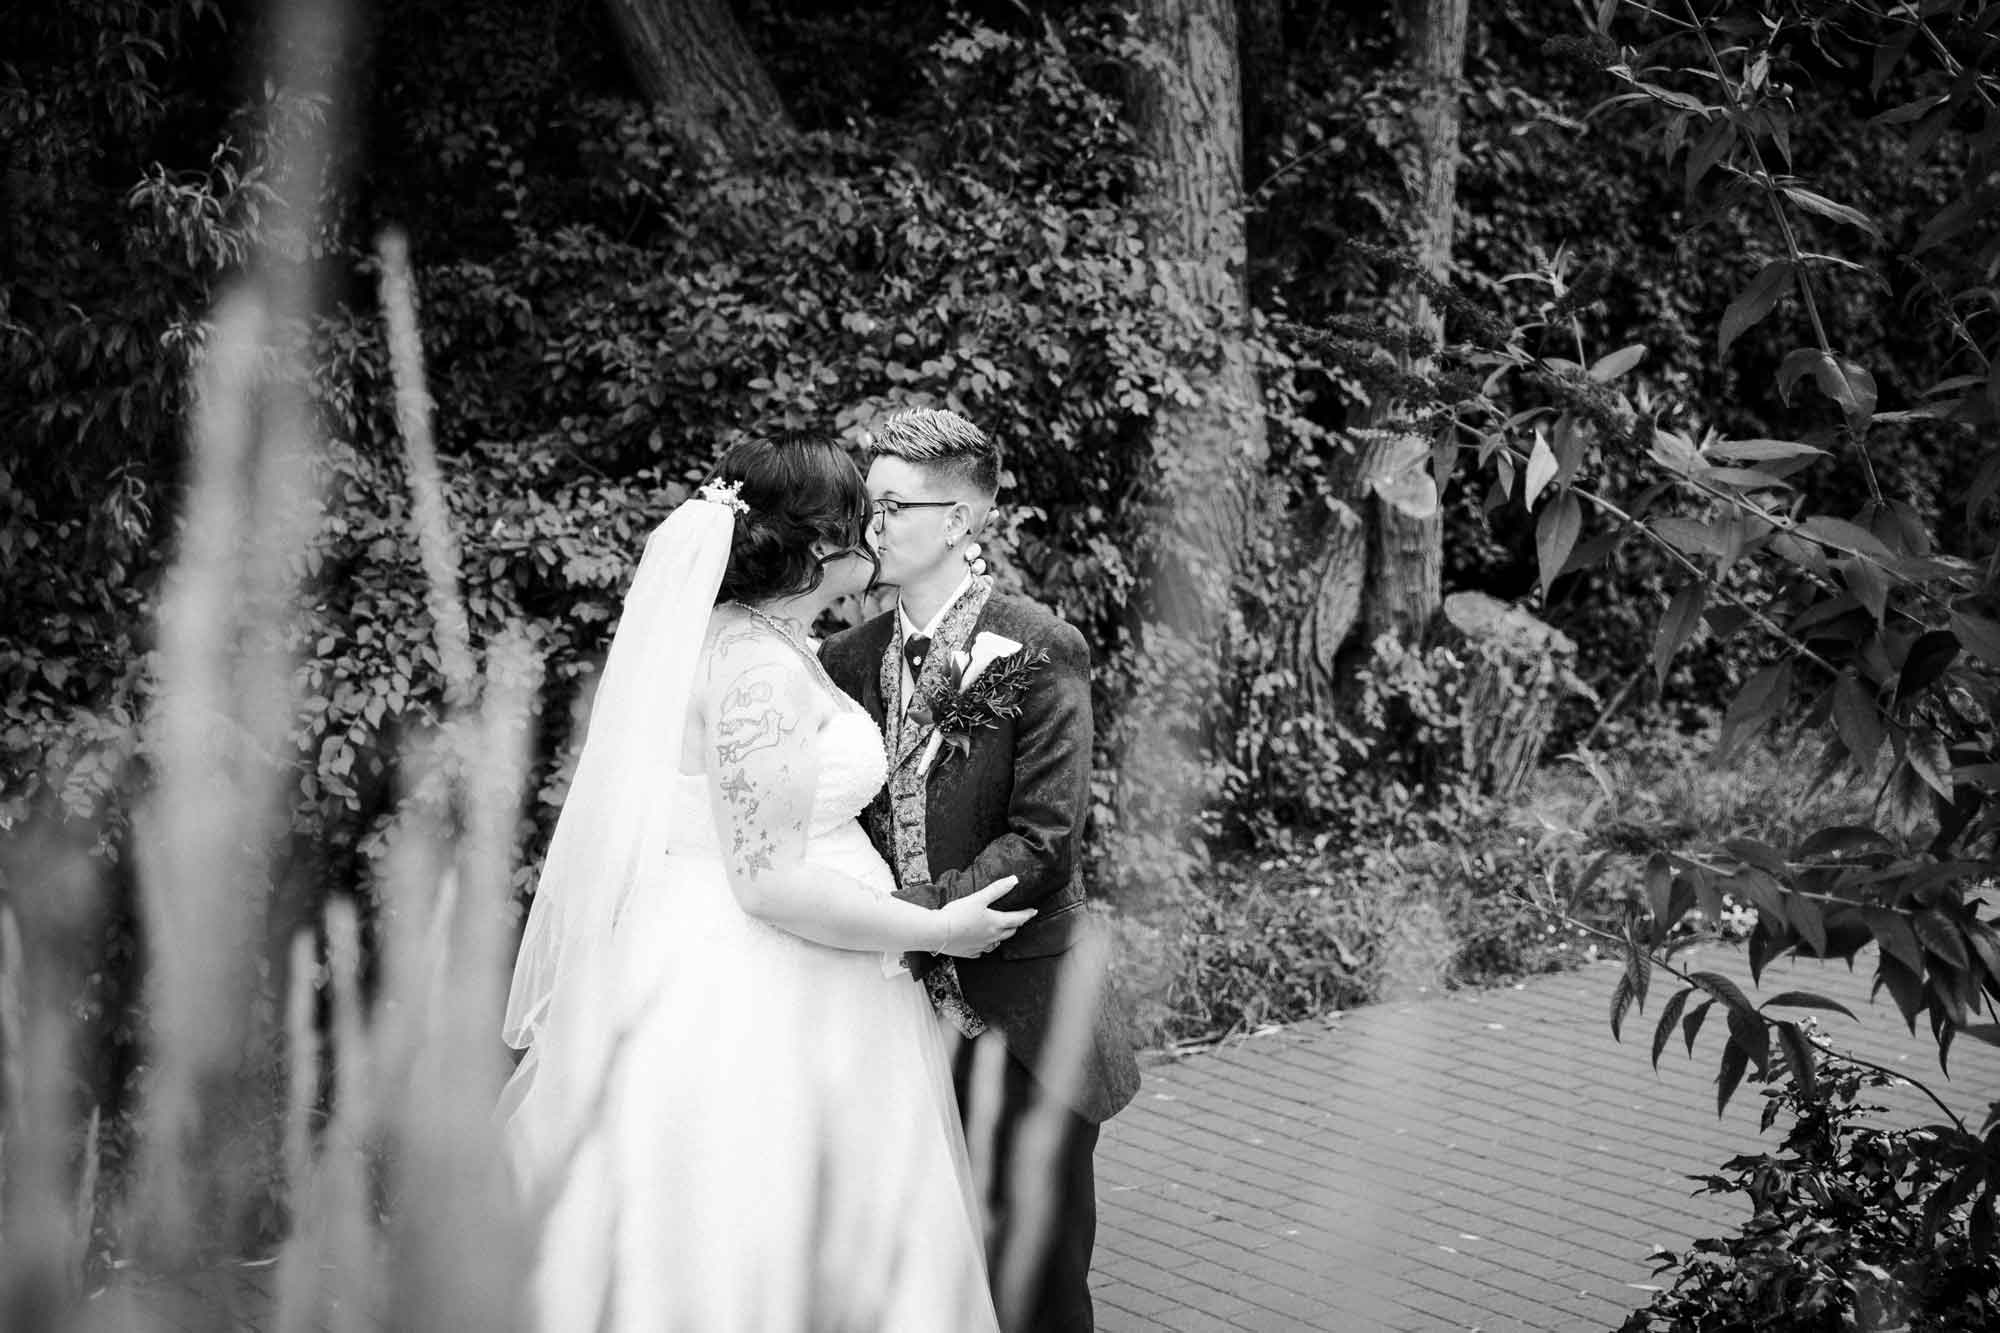 Brautpaar küsst sich, zwei Frauen, gleichgeschlechtliche Hochzeit, schwarz-weiß Aufnahme